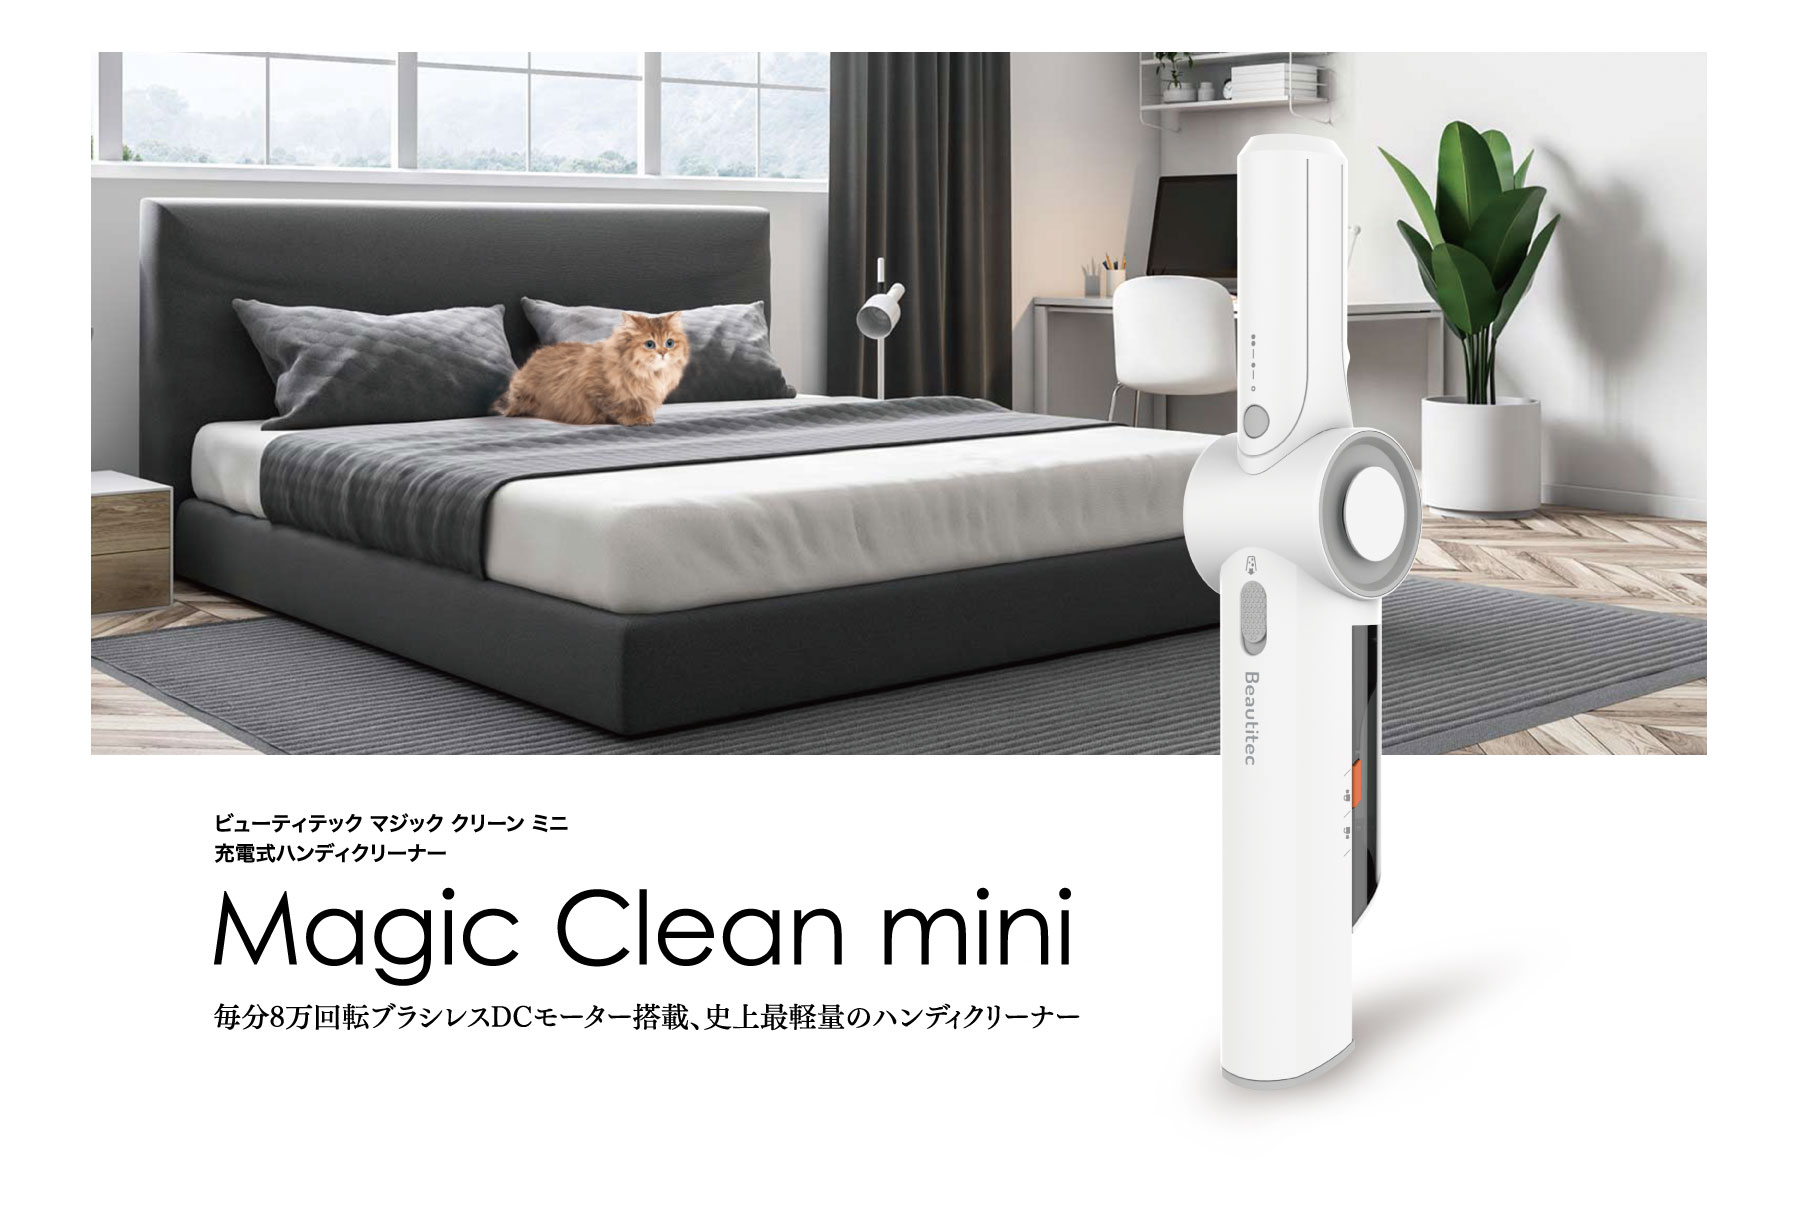 Magic Clean mini – 株式会社Beautitec